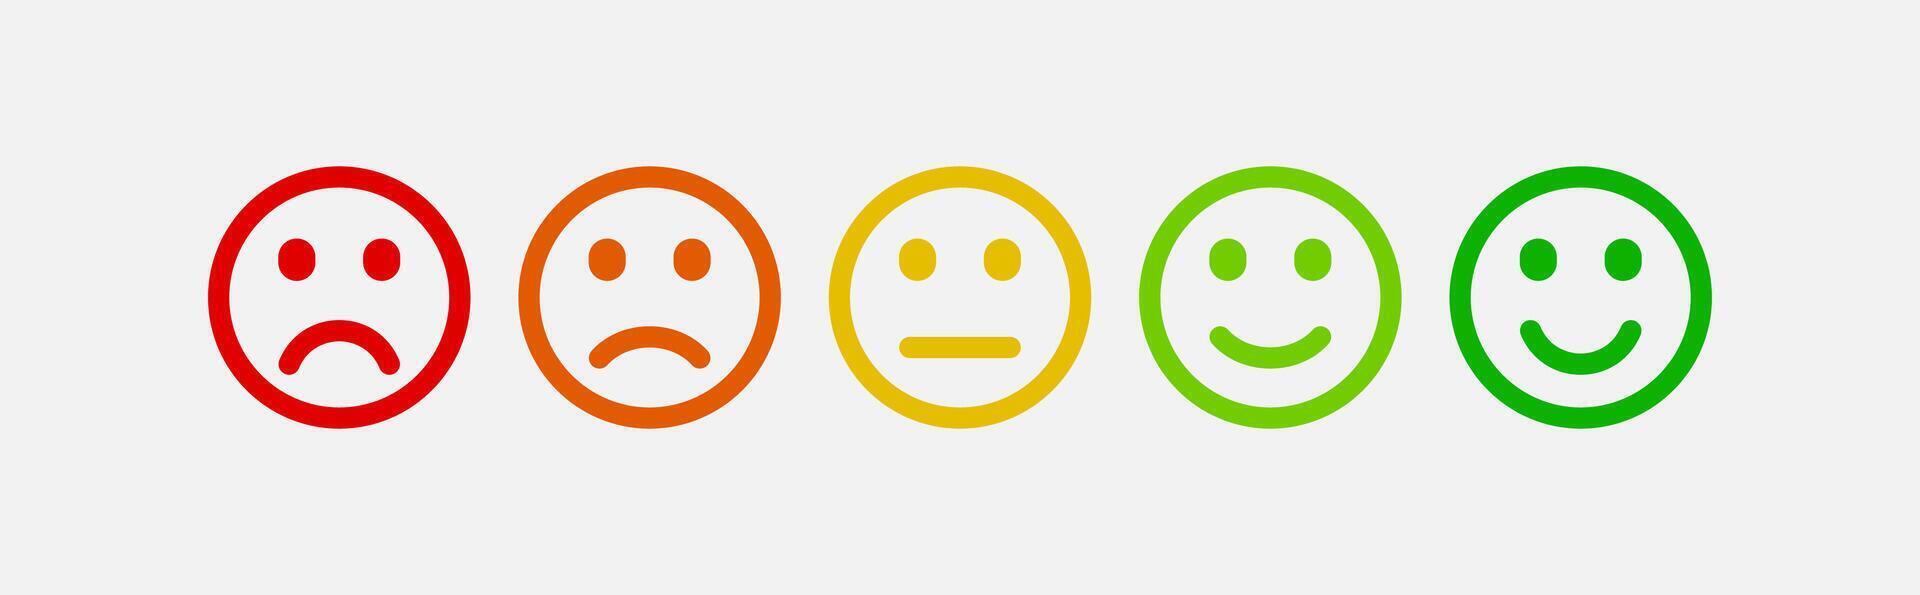 emotioneel humeur schaal emoji. klant tevredenheid indicator emoticons geïsoleerd vector. vector